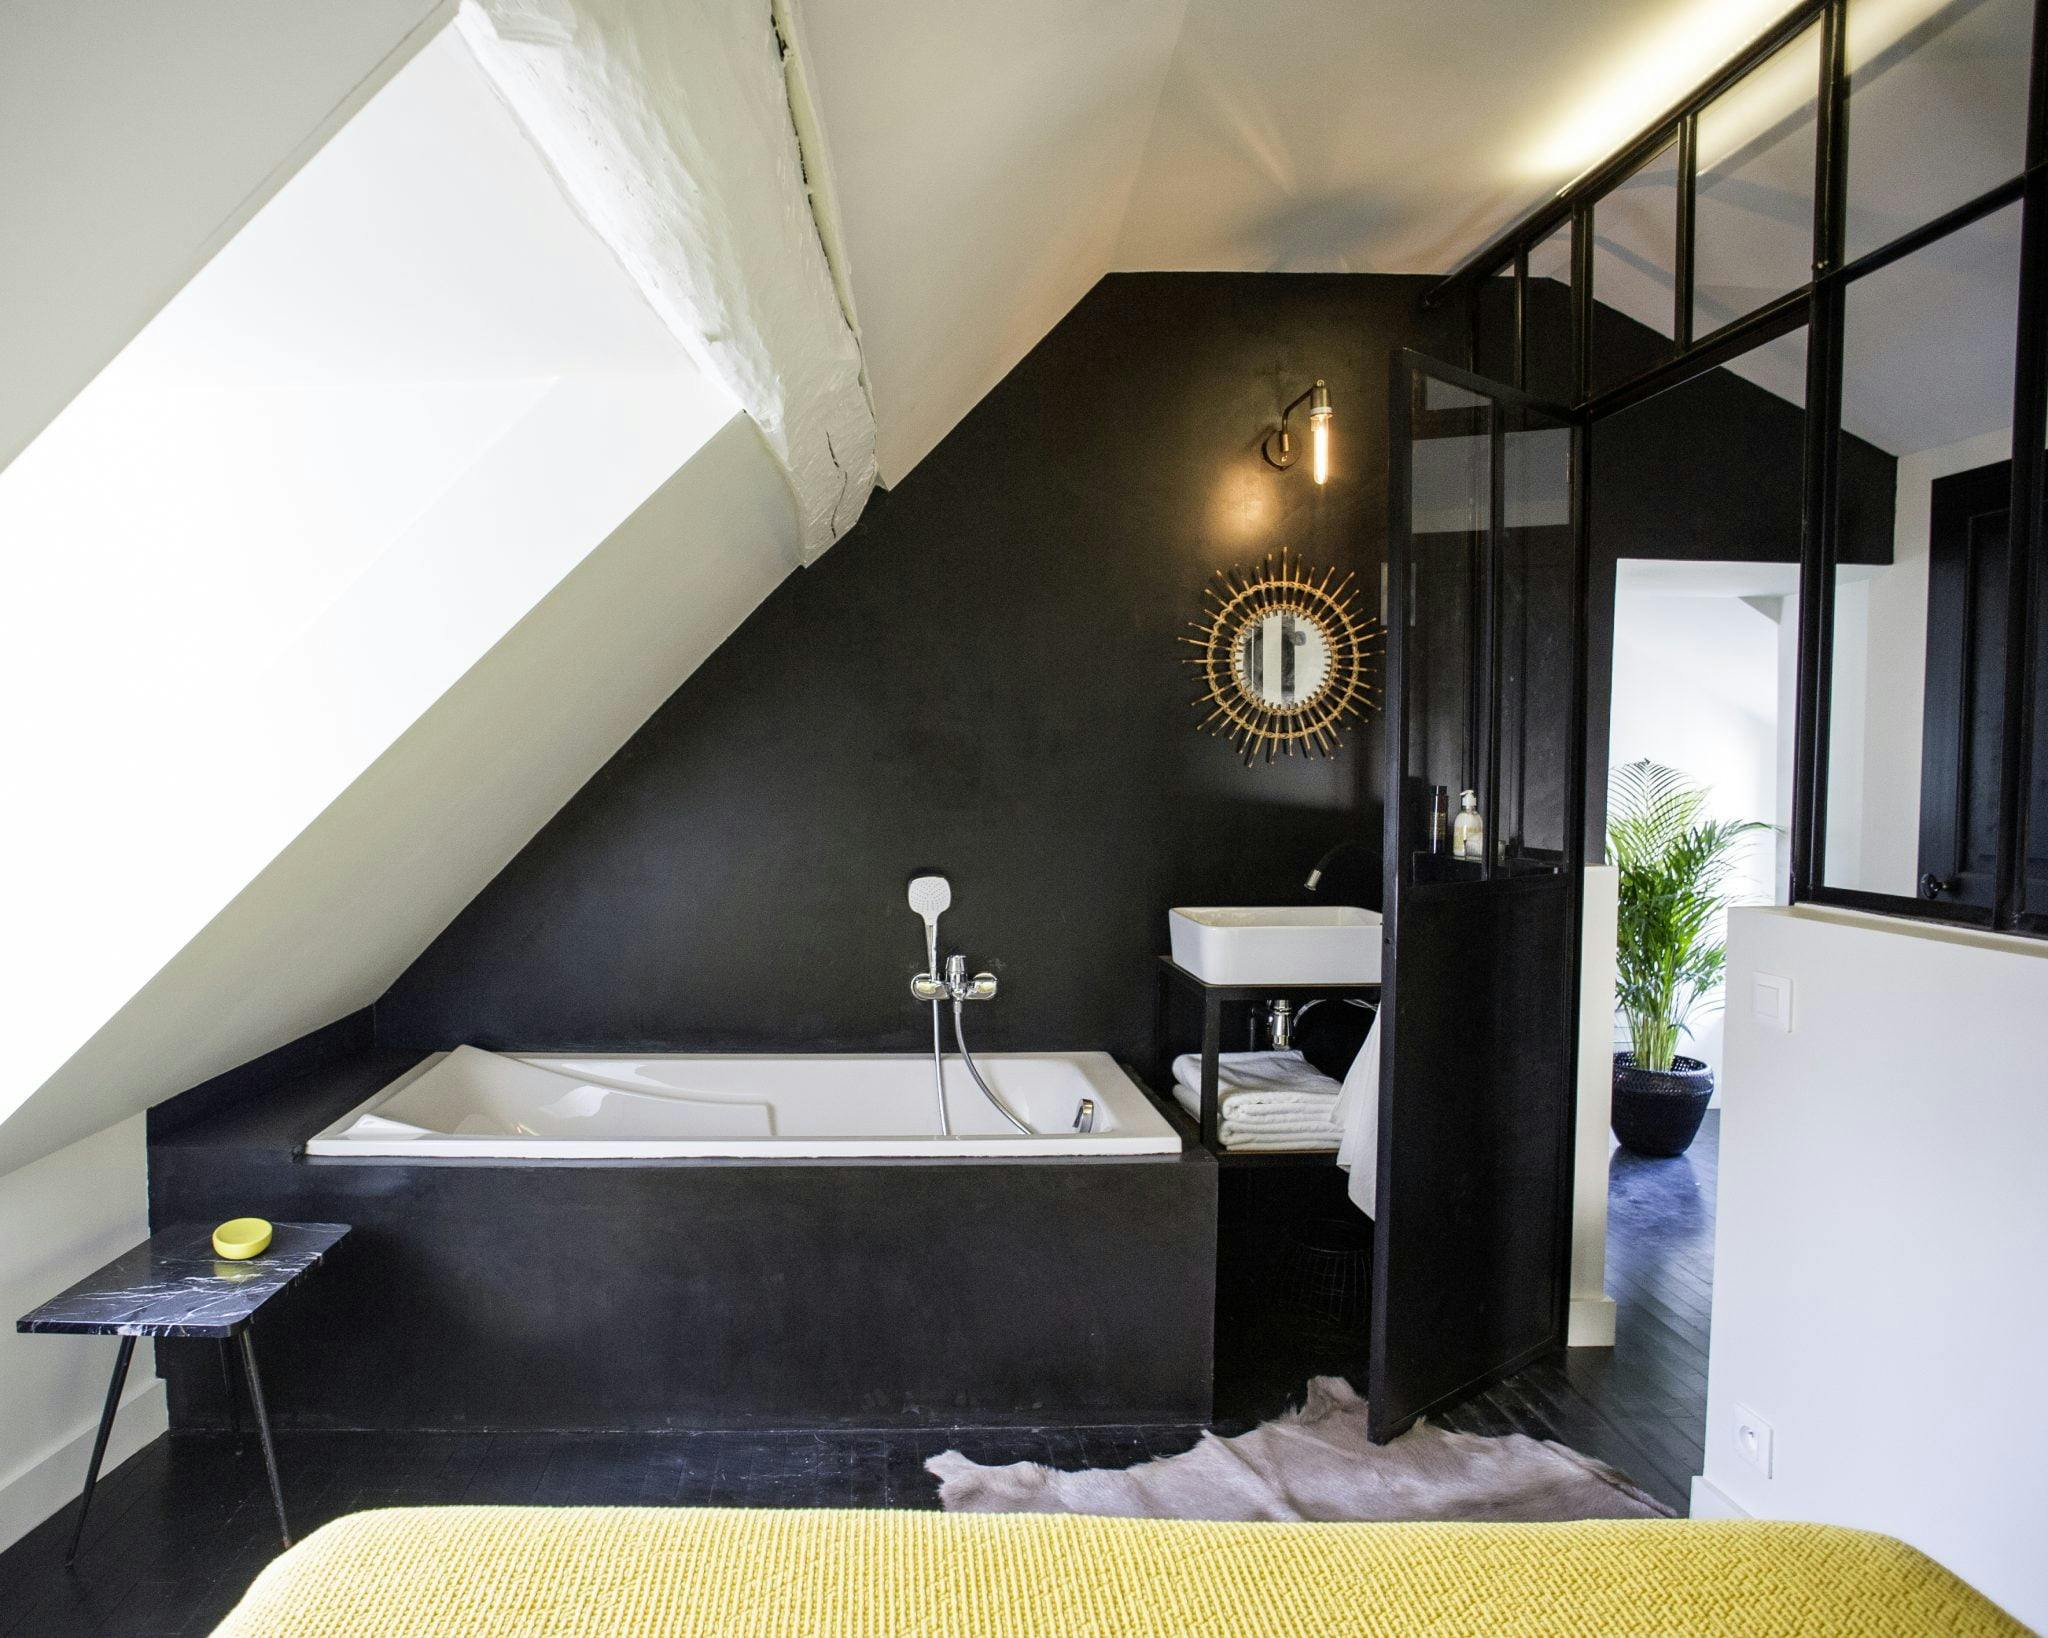 Détail de la salle de bain aux murs noirs, baignoire, baie vitrée et miroir doré.